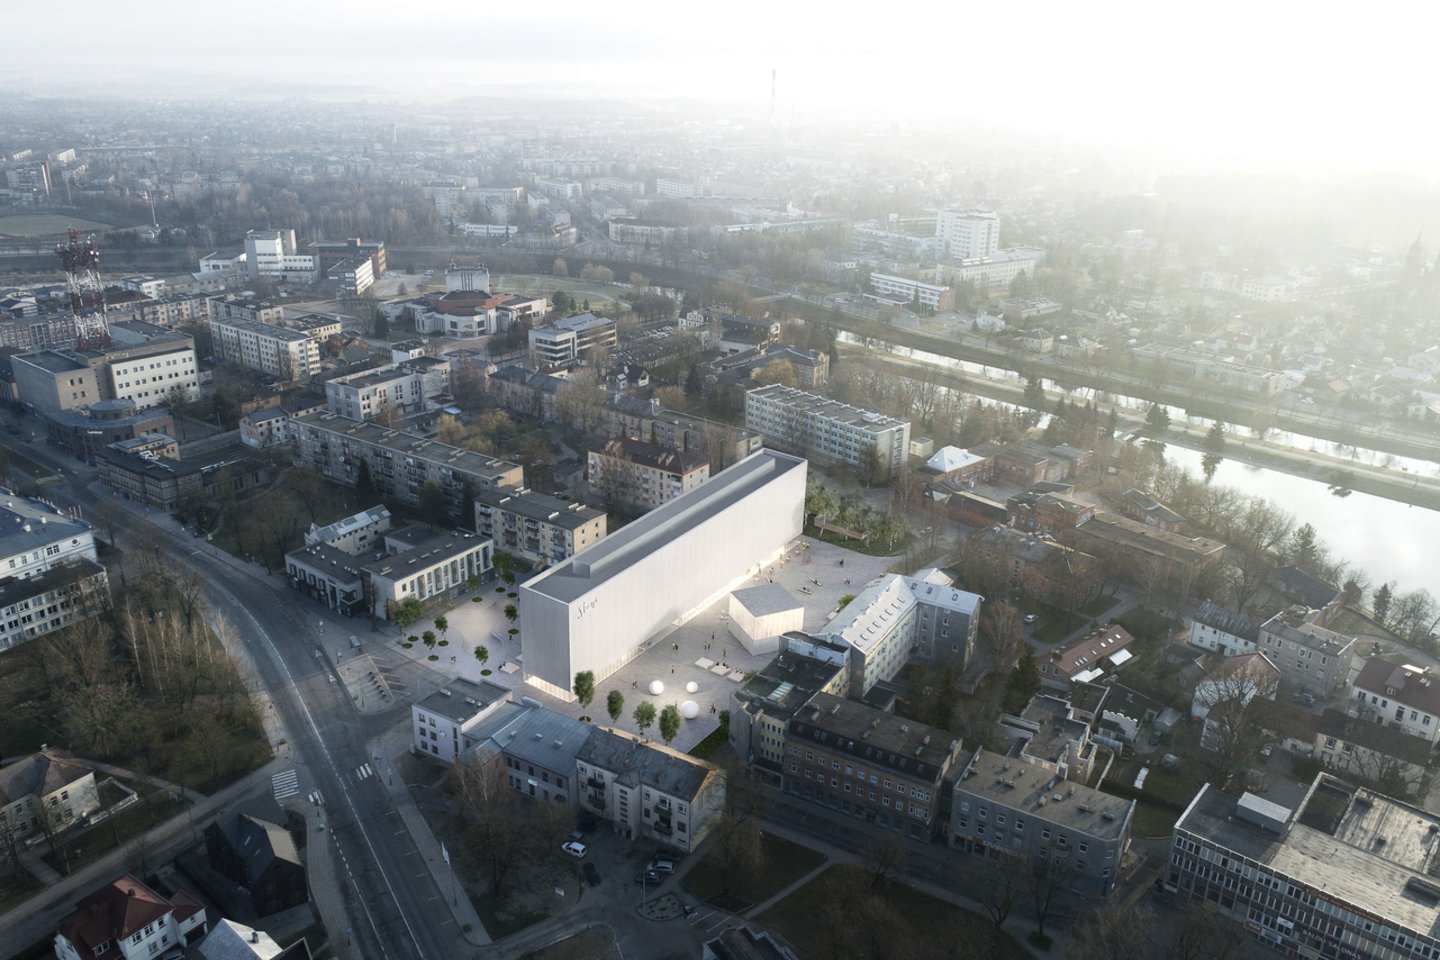 Stasio Eidrigevičiaus menų centras (SEMC) lankytojus pakvies jau 2023 metais. Šis projektas išsiskiria estetika ir modernumu, o saikingumas – išskirtinis jo bruožas. Apie architektūrinę SEMC idėją, pastato ypatybes ir išskirtinius architektūrinius sprendimus pasakoja vienas projekto autorių – architektas Aurimas Syrusas.<br>Vizual.